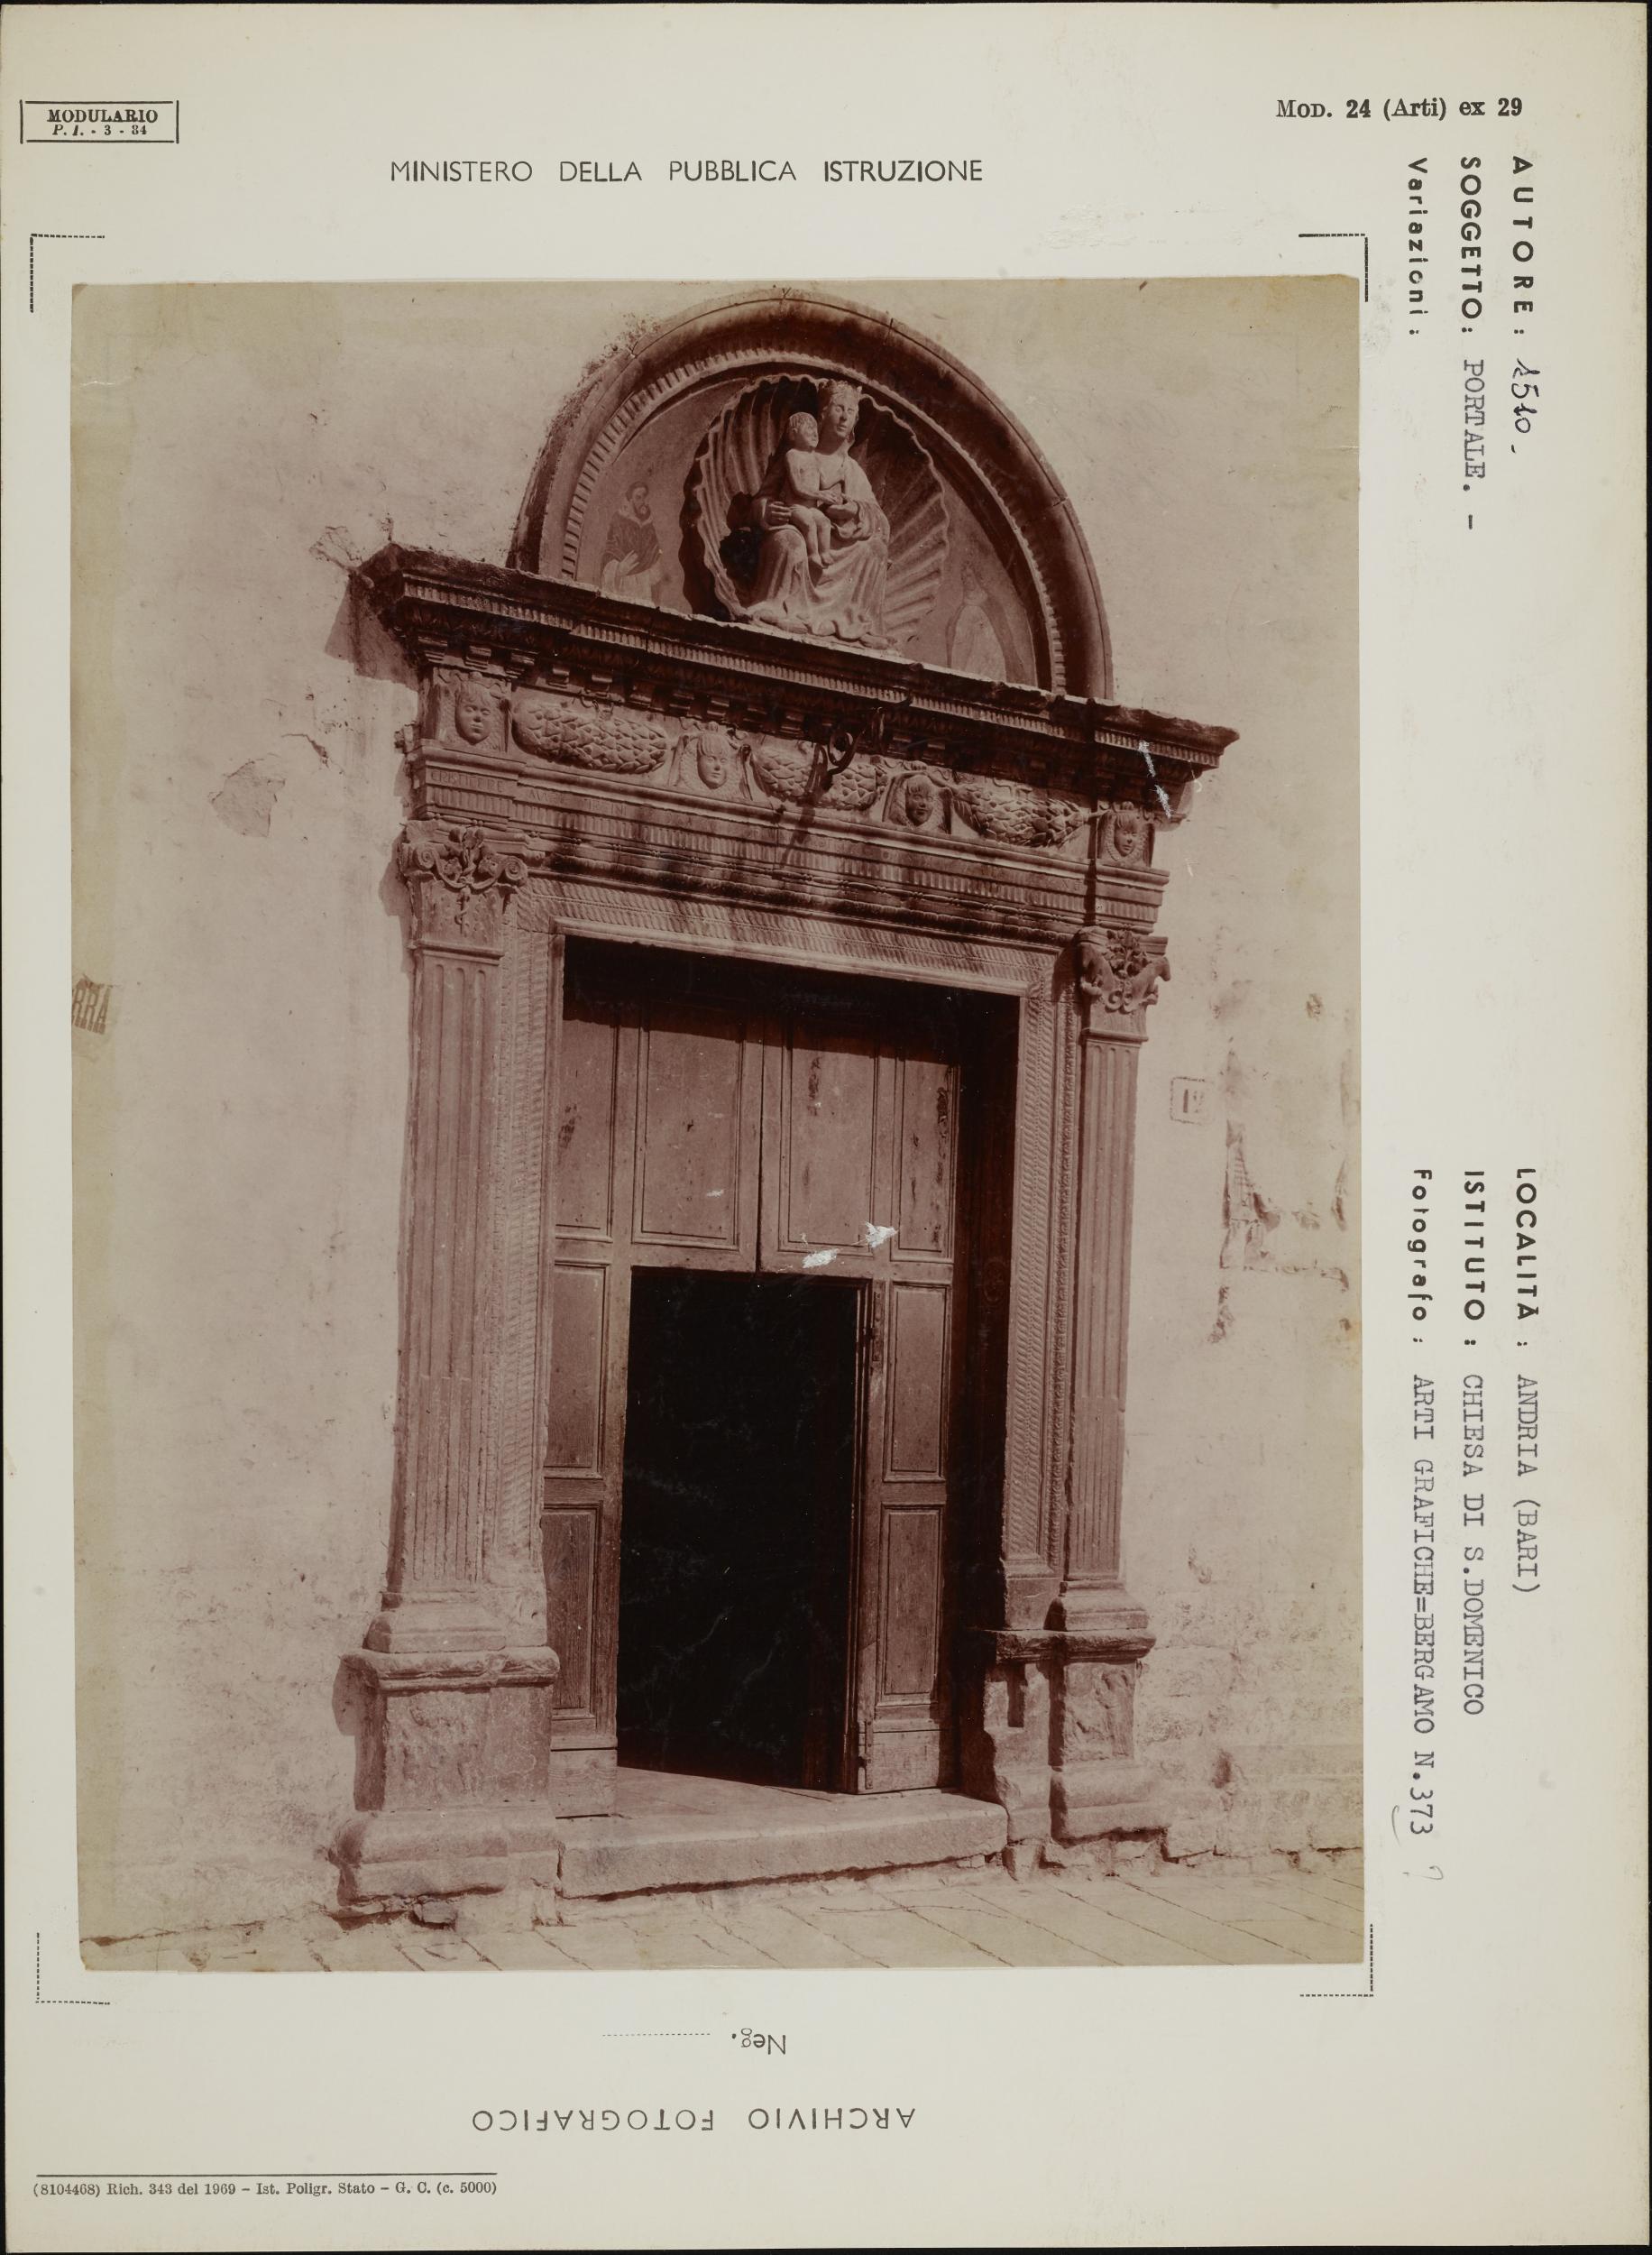 Fotografo non identificato, Andria - Chiesa di S. Domenico, portale, 1904-1915, albumina/carta, MPI131869